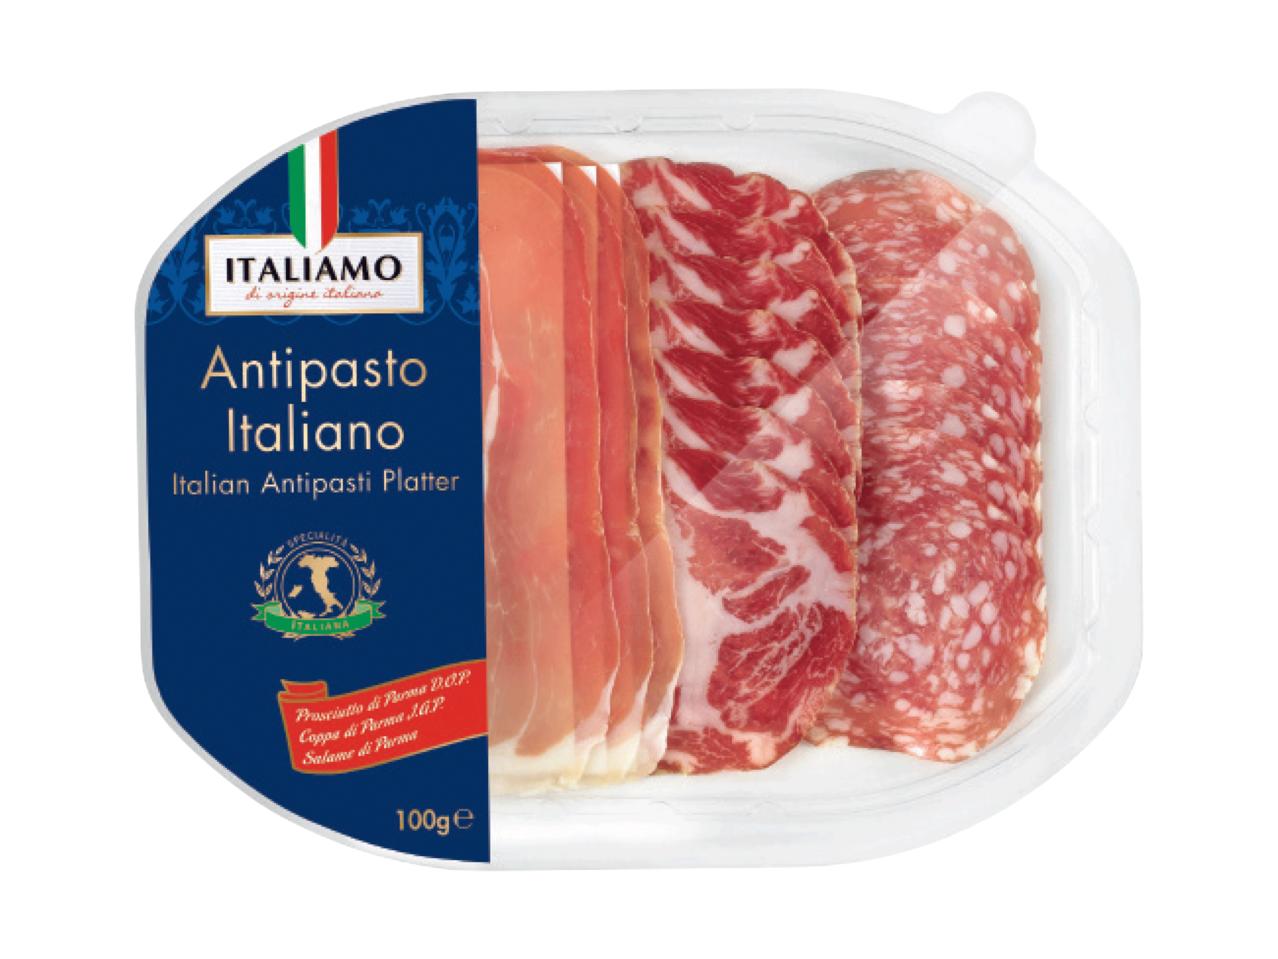 Italian Antipasti Platter